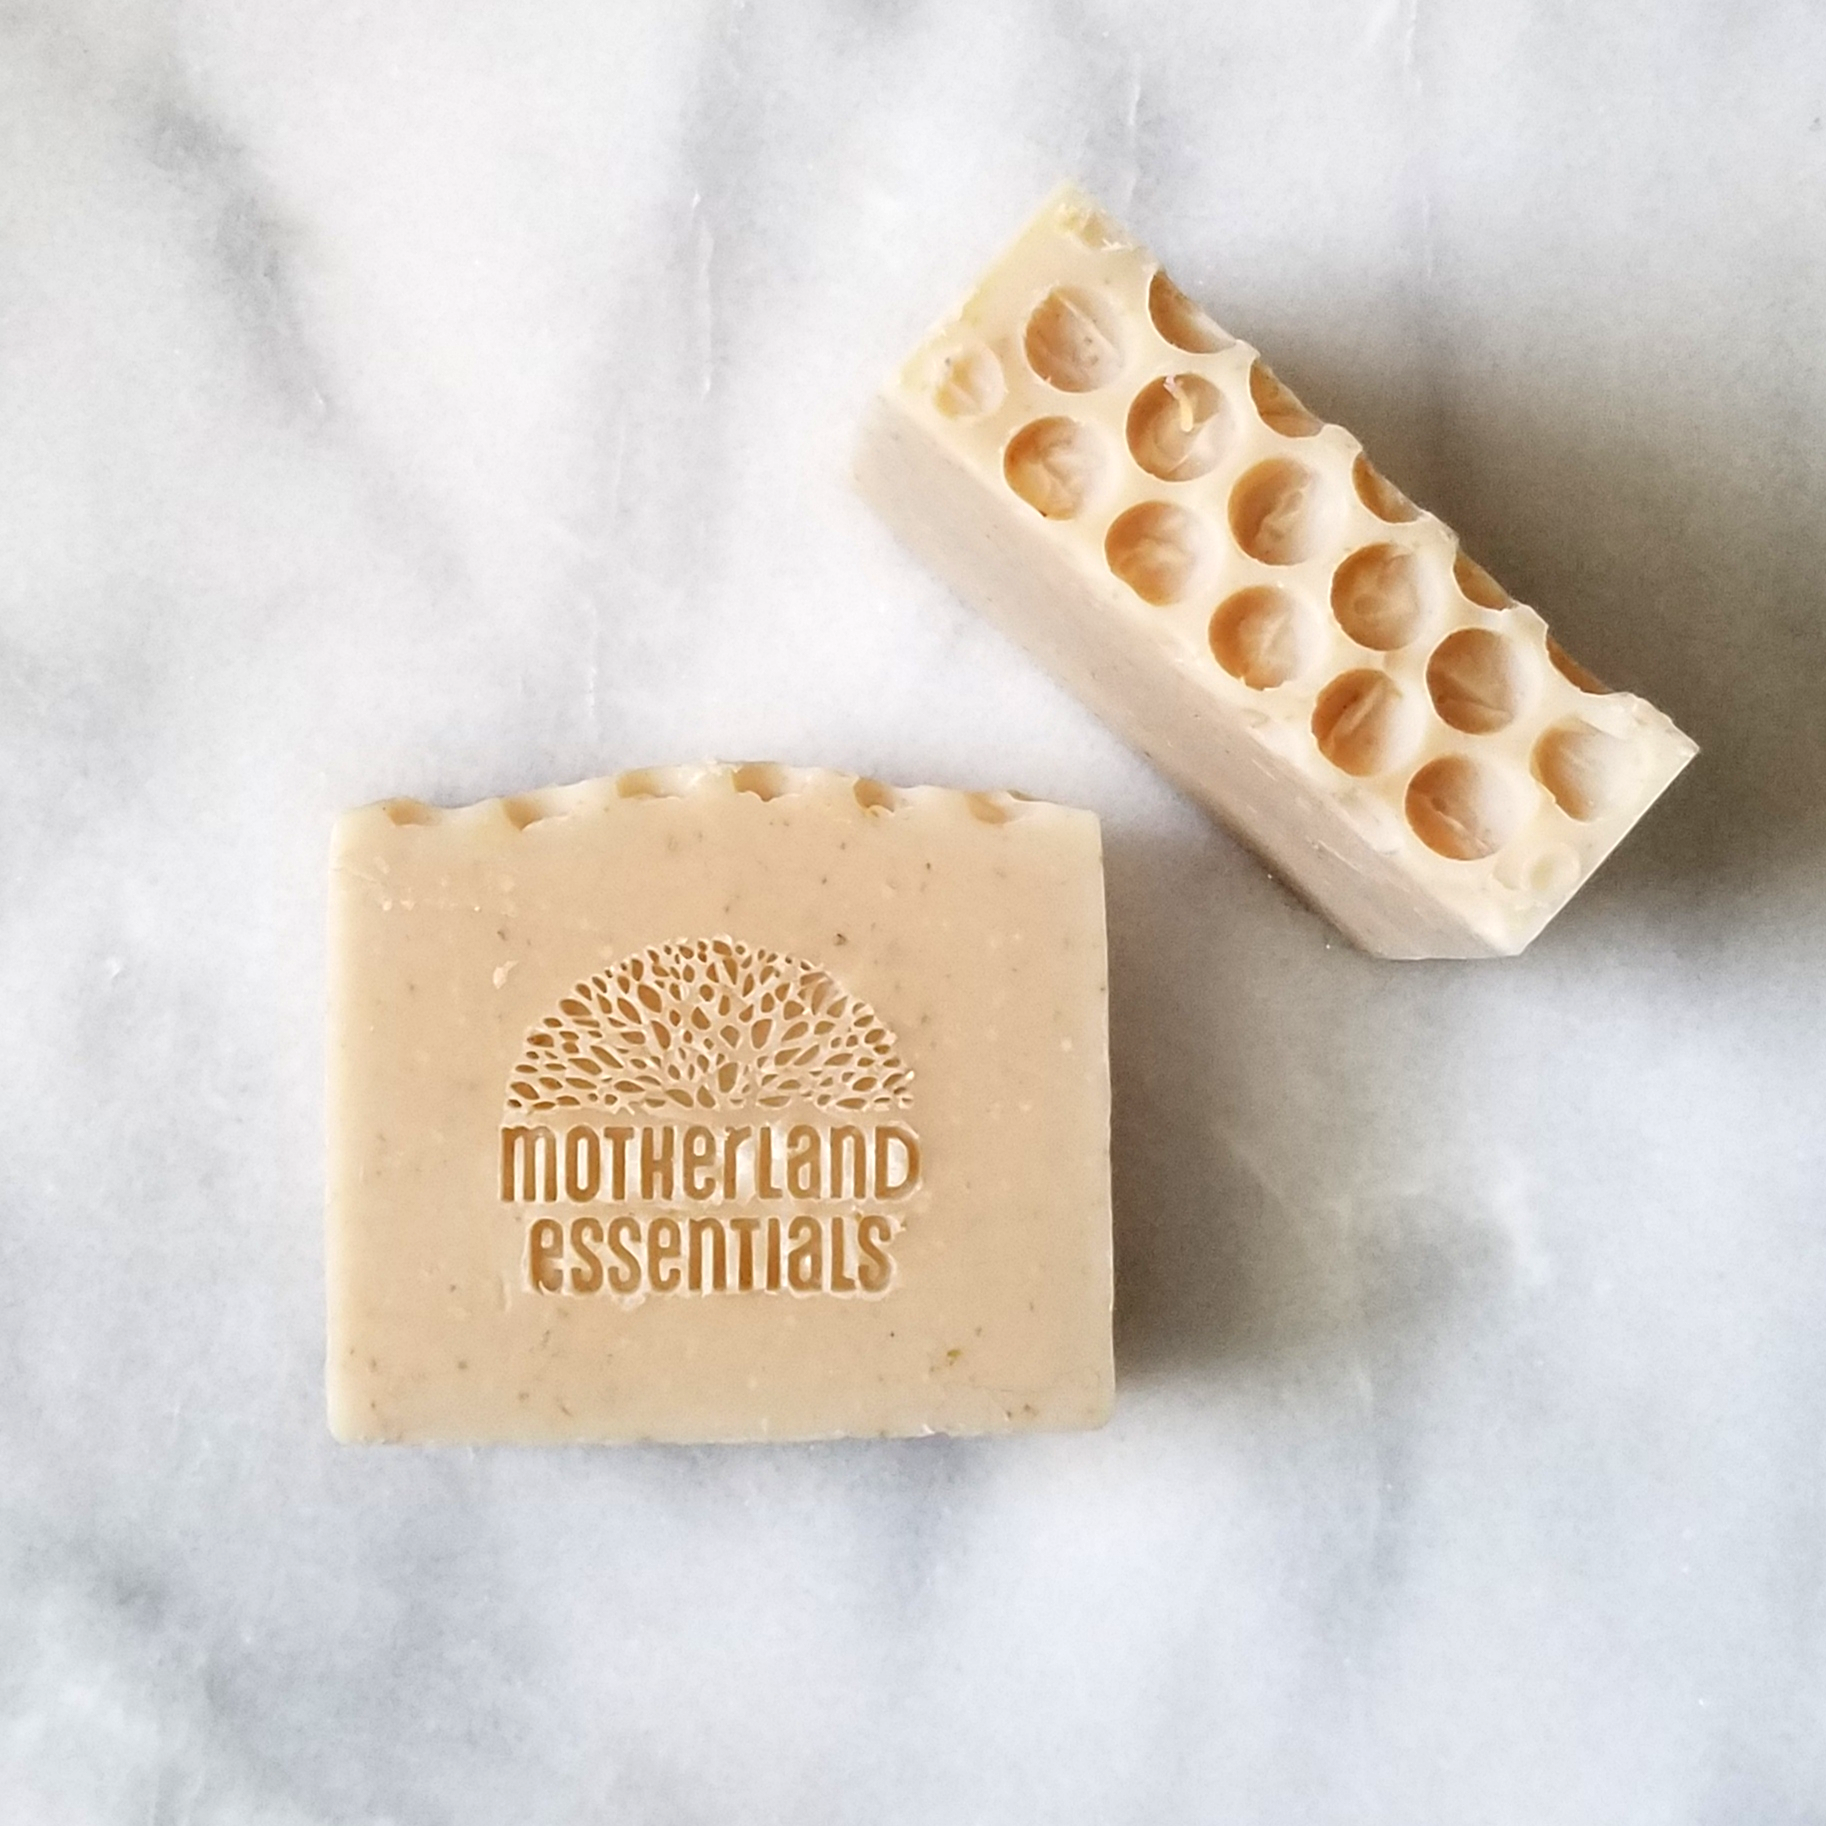 Moisturizing Oatmeal Honey Soap for Dry Skin - The Artisan Life